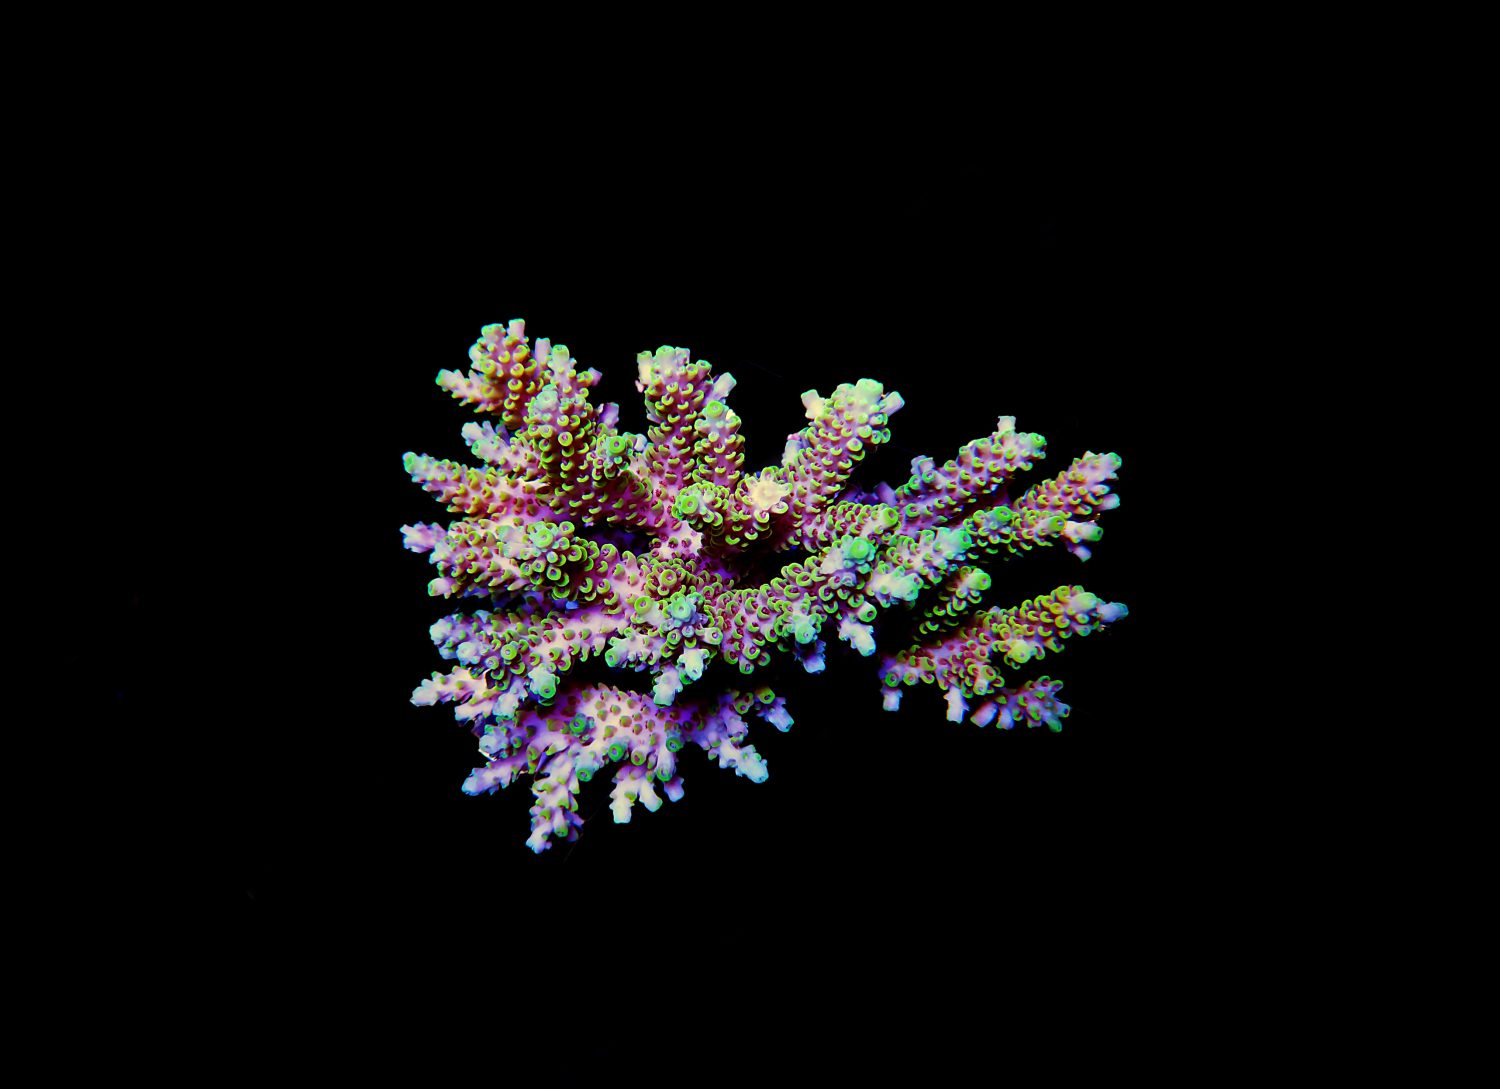 Immagine isolata del corallo Acropora.  Acropora è un genere di coralli duri a polipo piccolo.